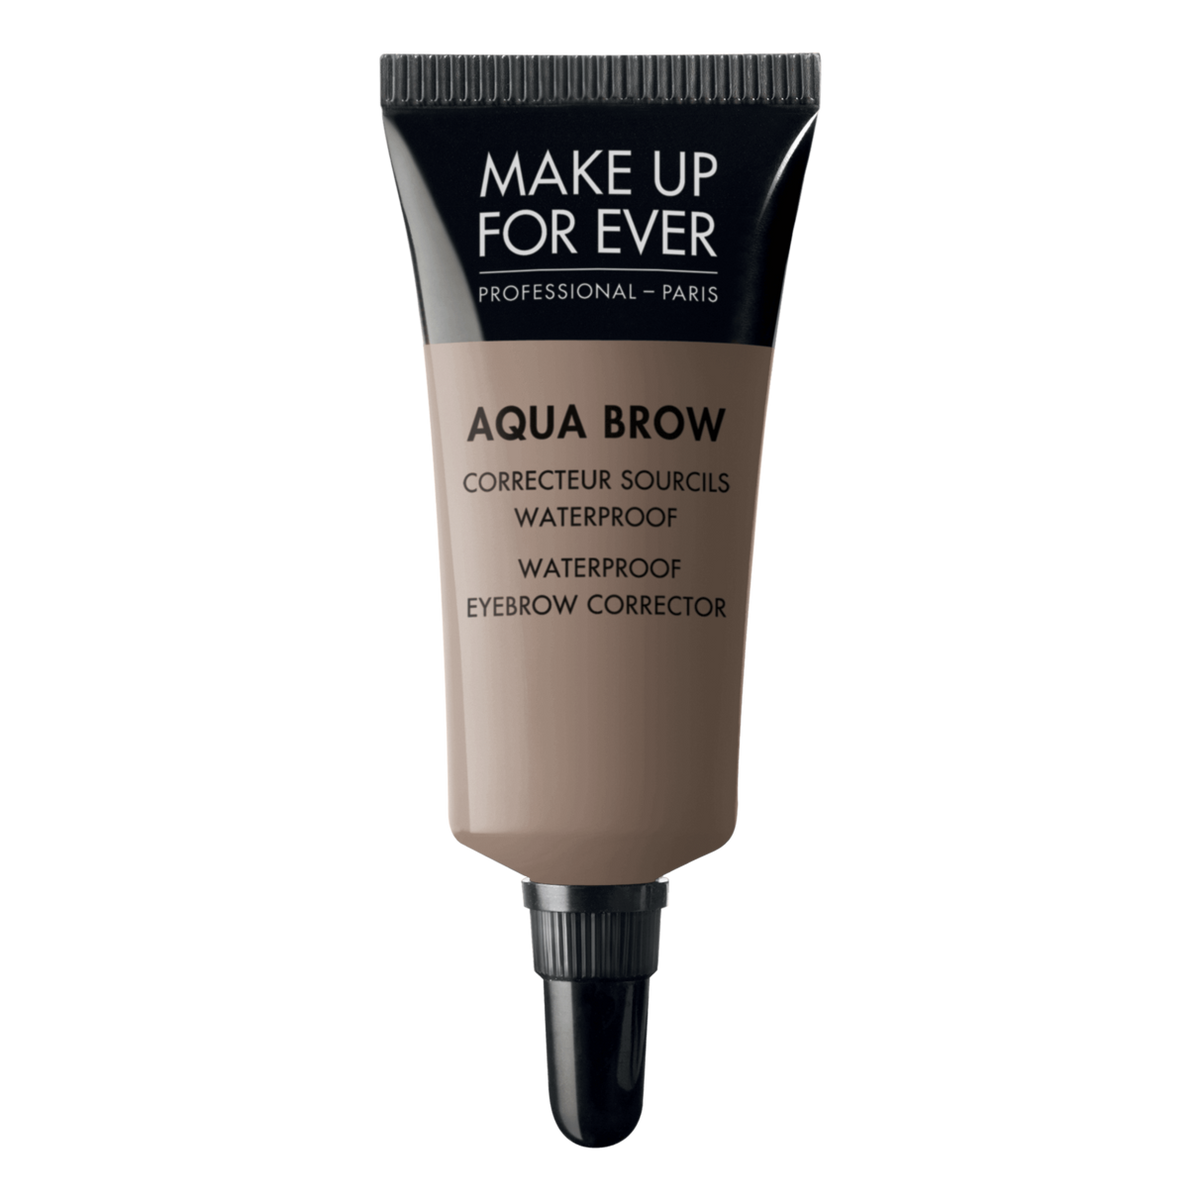 MUFE Aqua Brow Waterproof Eyebrow Corrector